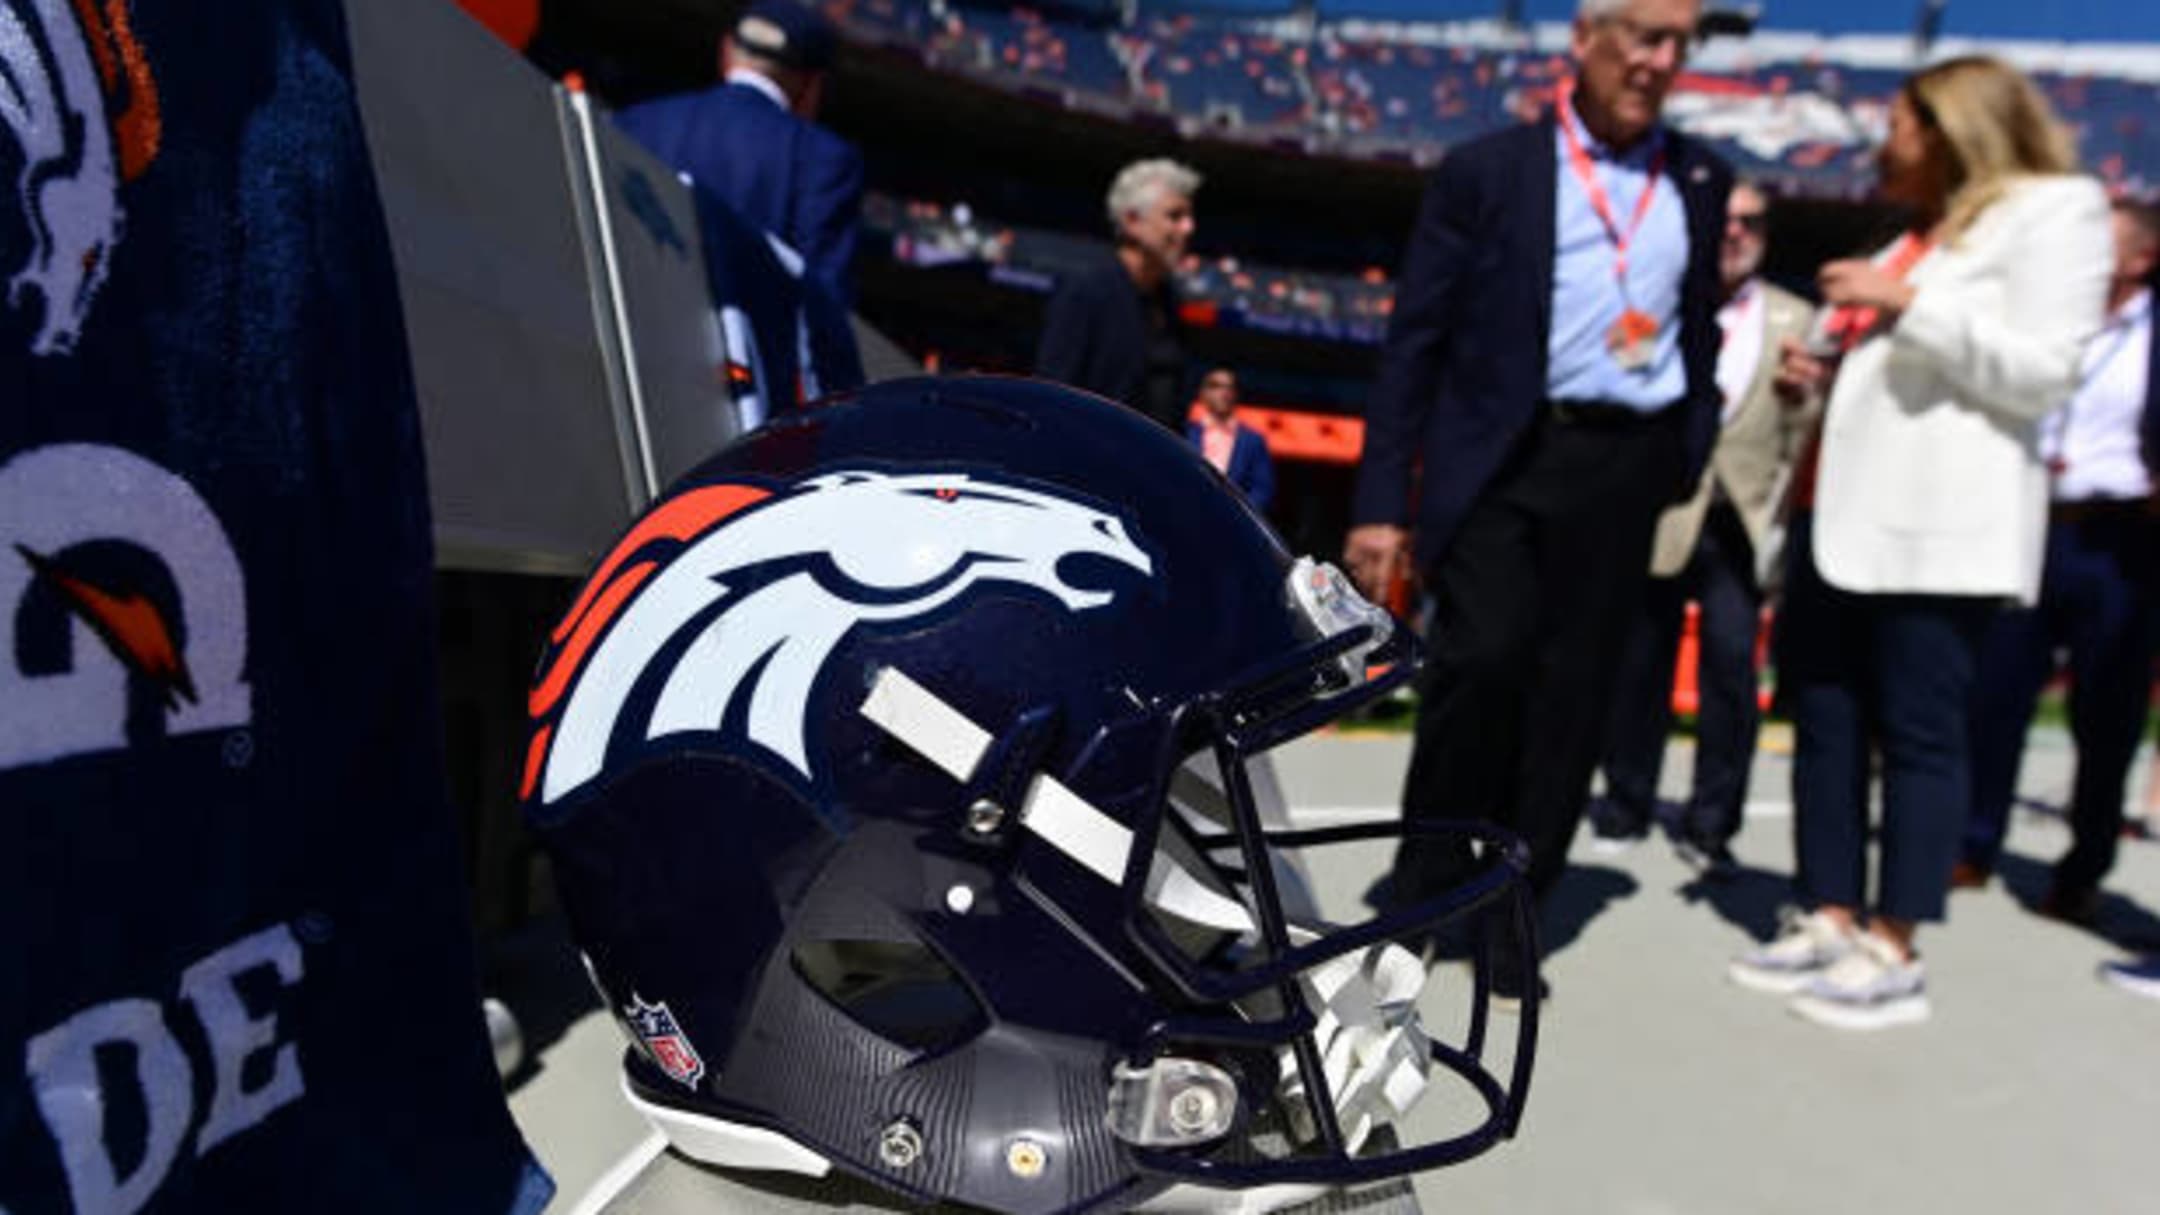 Denver Broncos' Retro Helmets & Uniforms Returning to Mile High